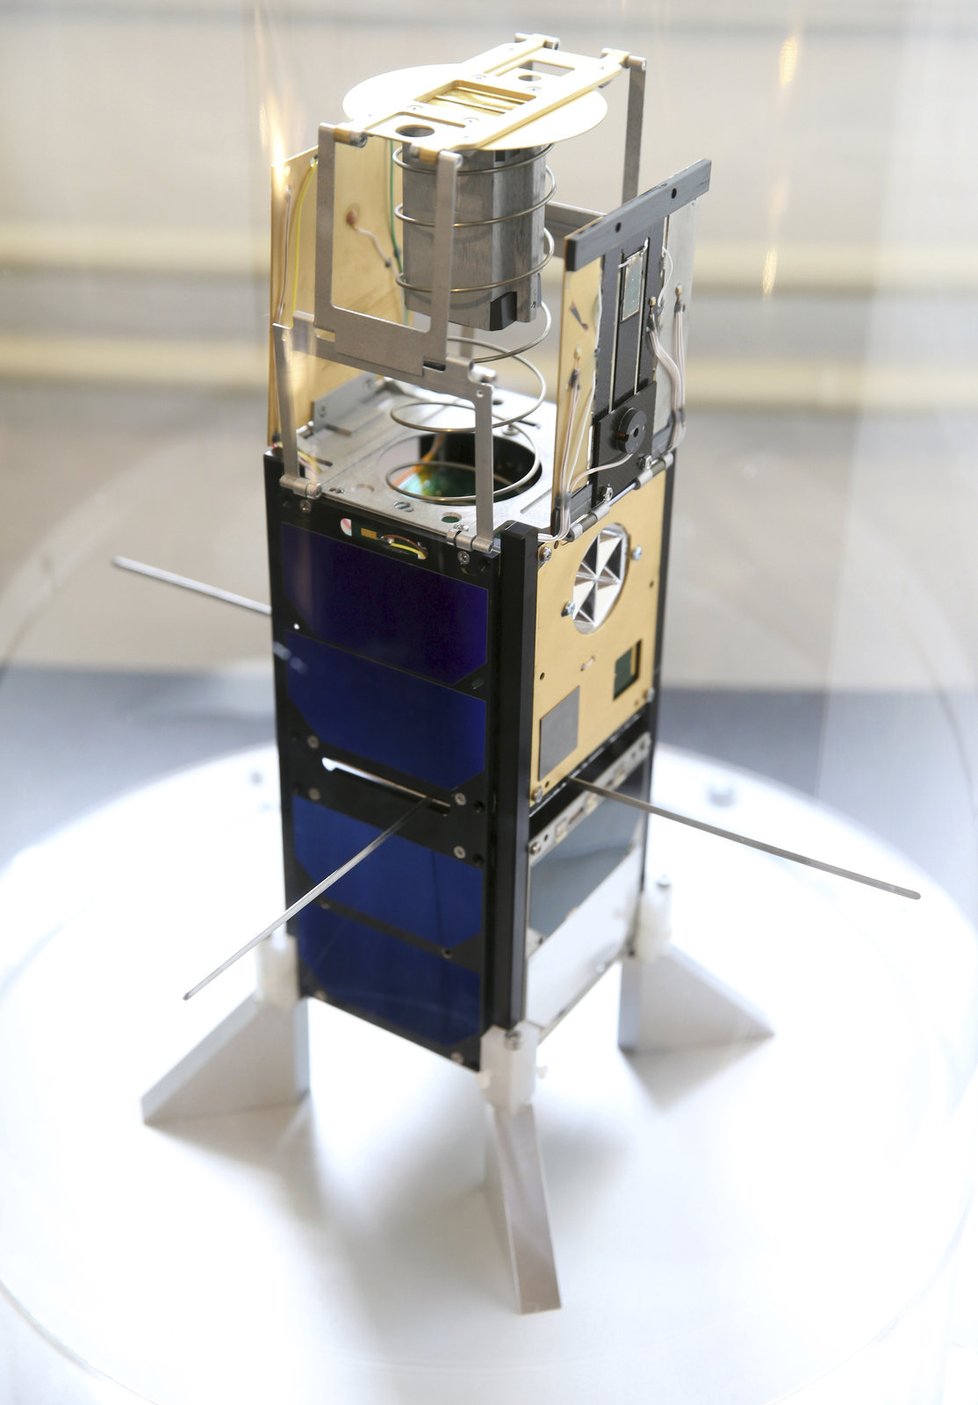 Nanodružice VZLUSAT-1 je první česká technologická družice.